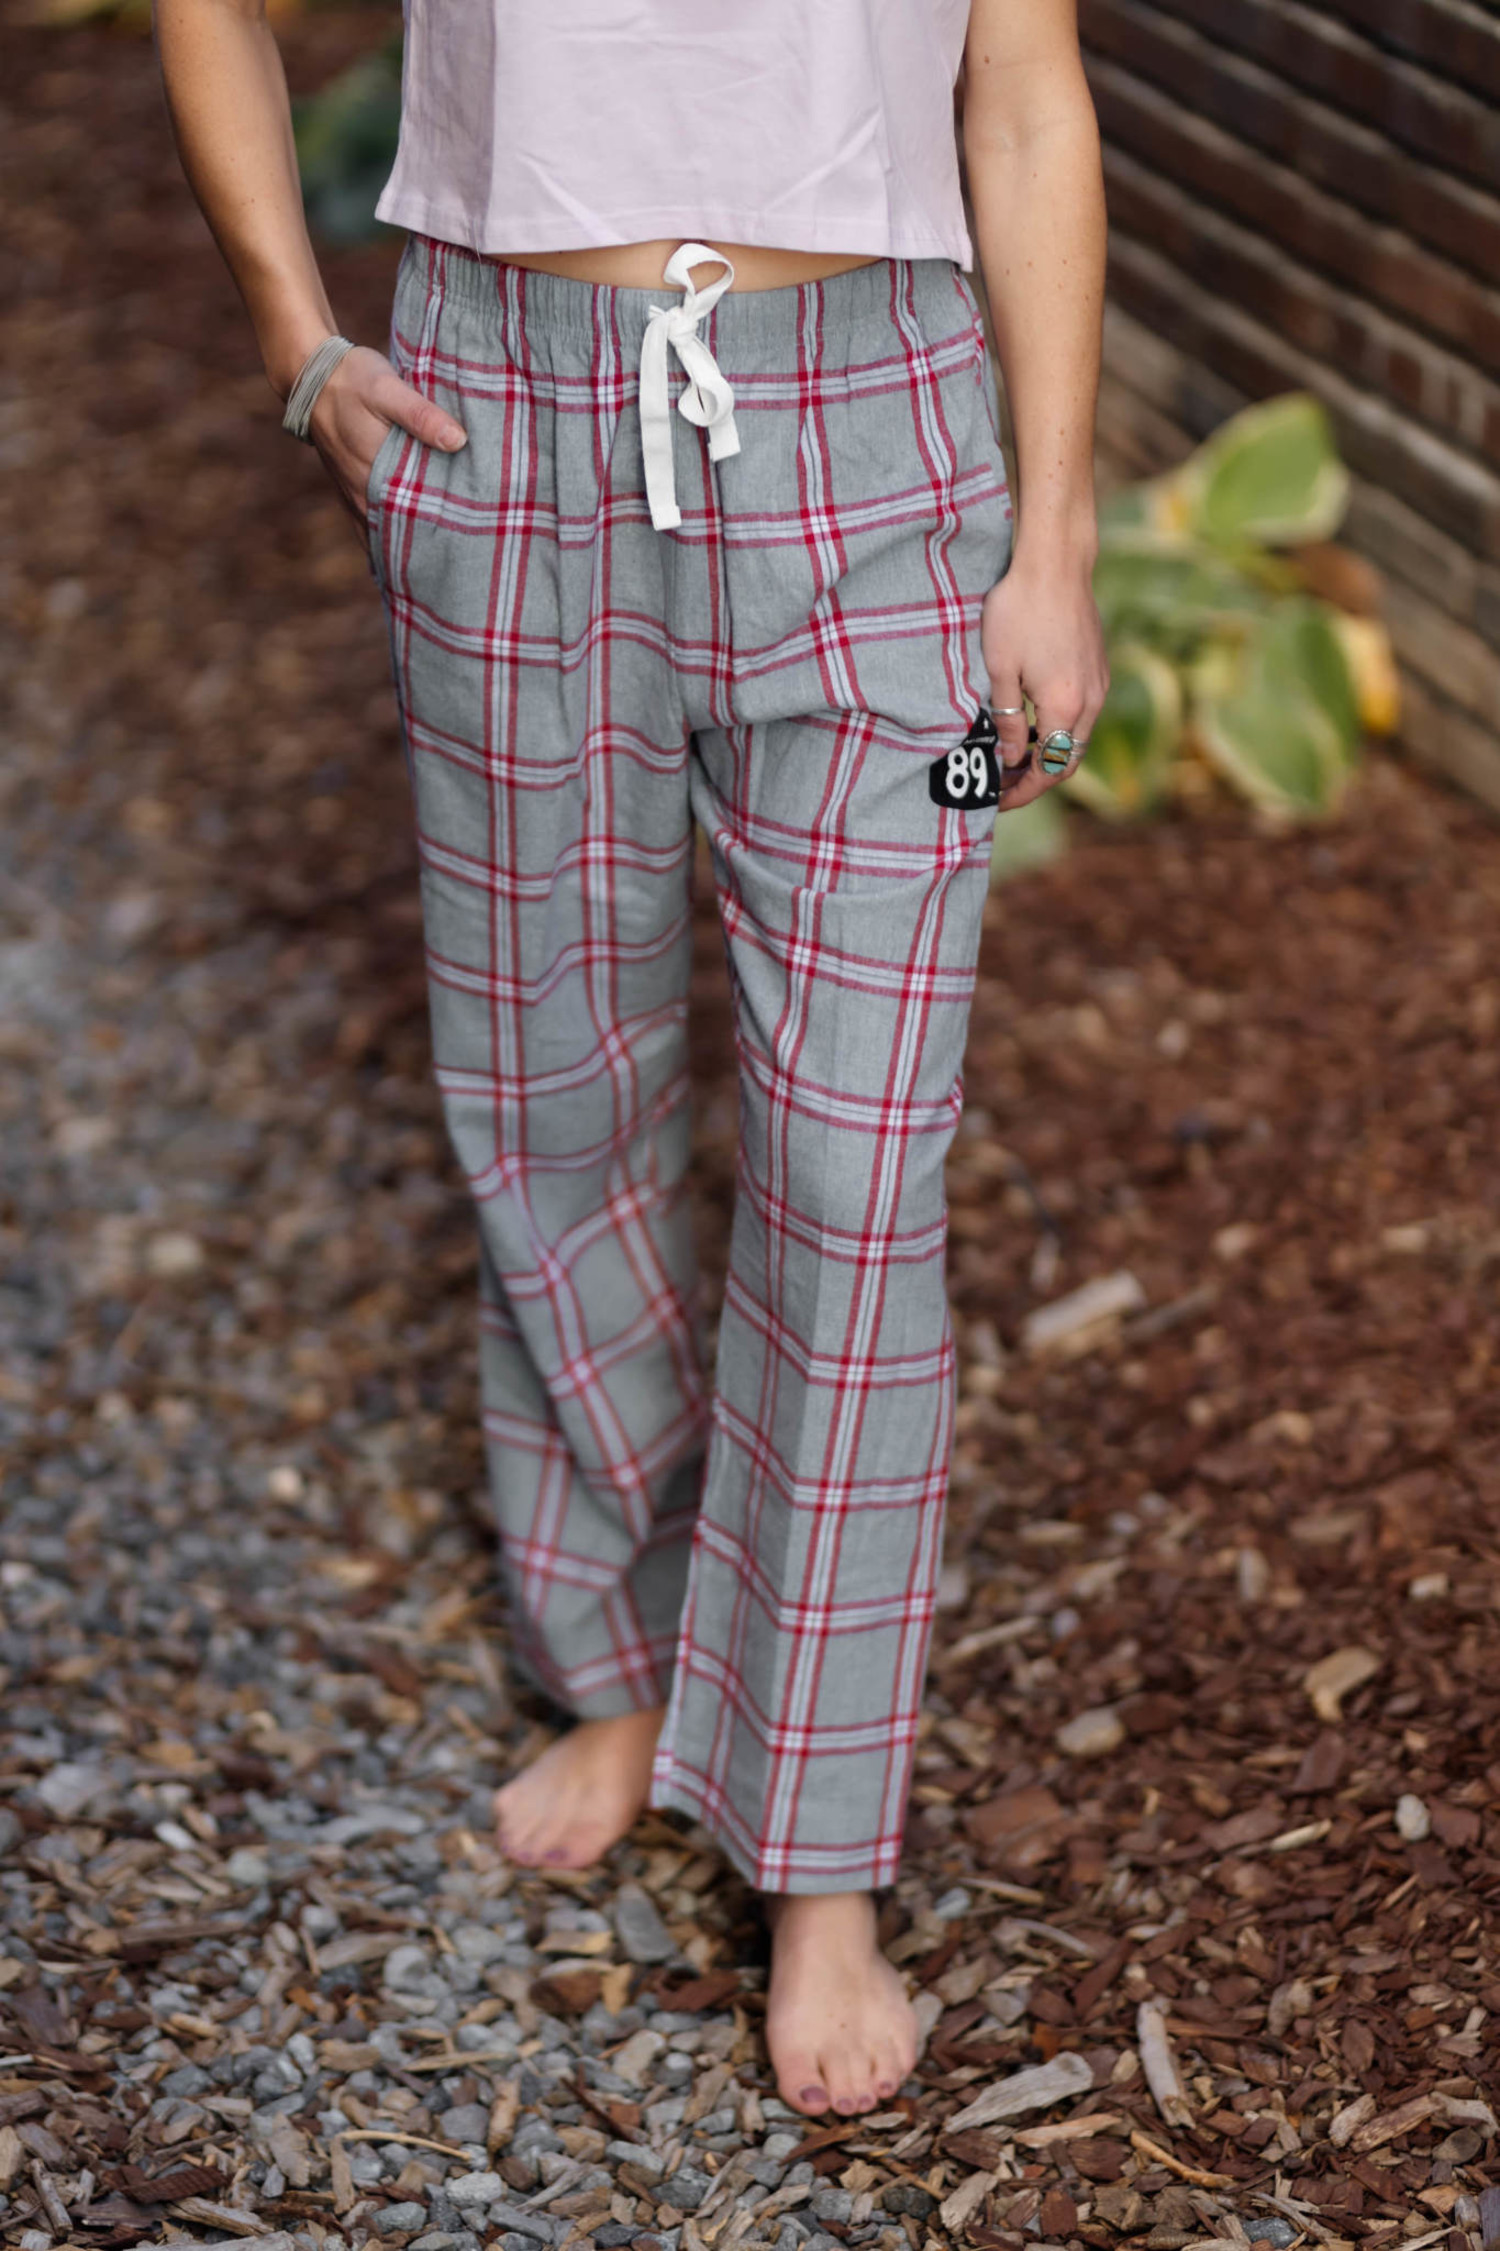 Buy Just Love Womens Pajama Capri Pants, Grey, X-Large at Amazon.in